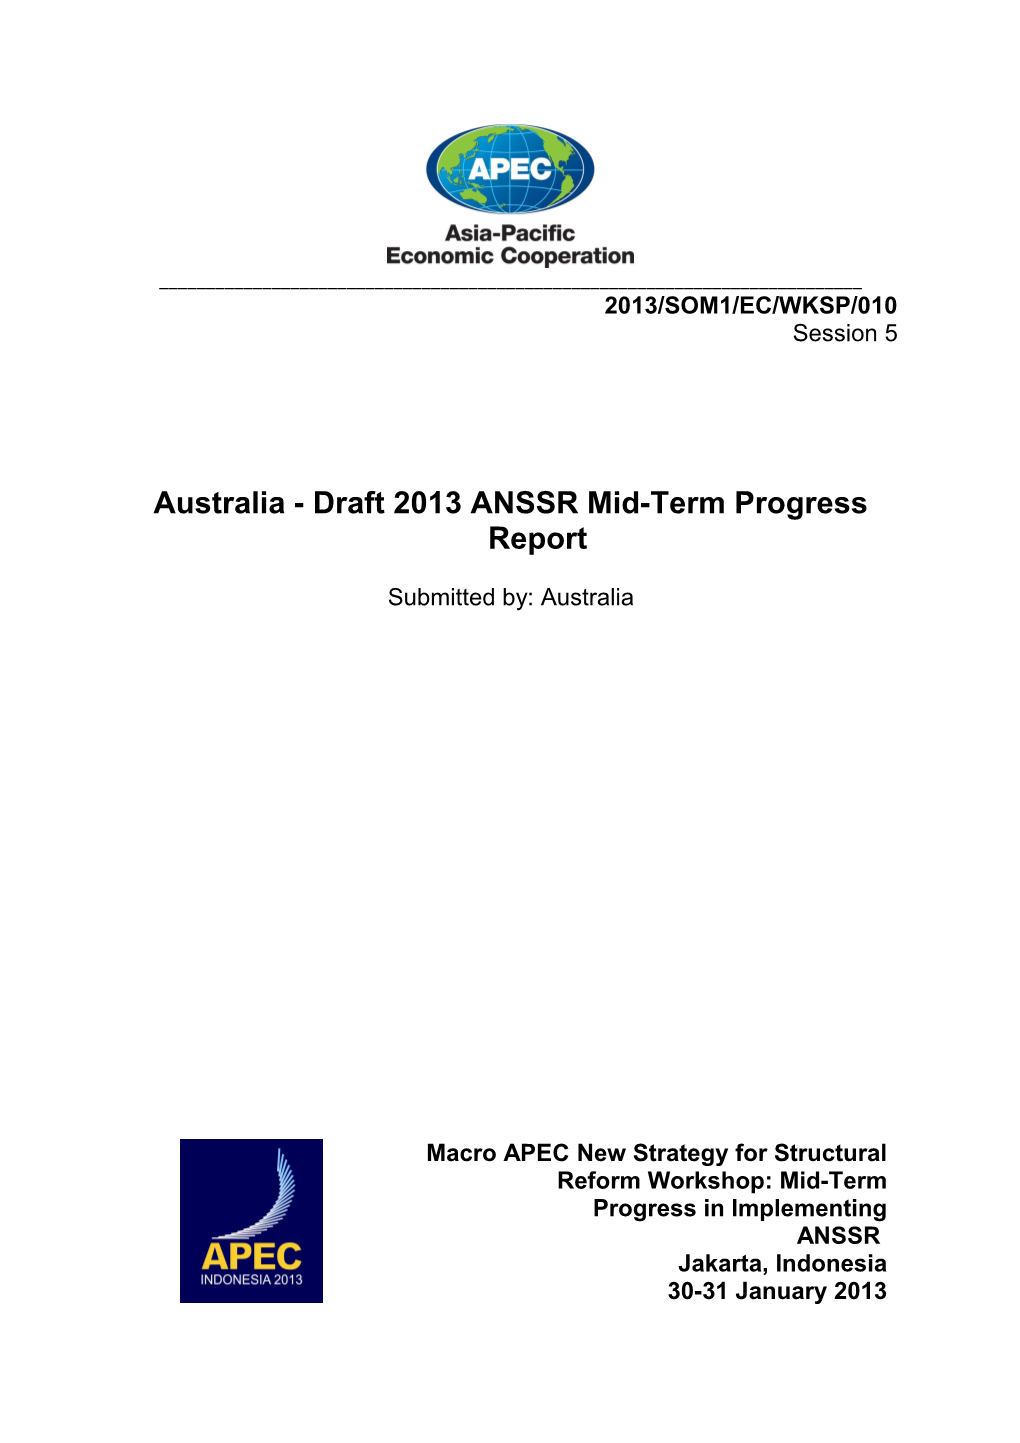 Australia - Draft 2013 ANSSR Mid-Term Progress Report